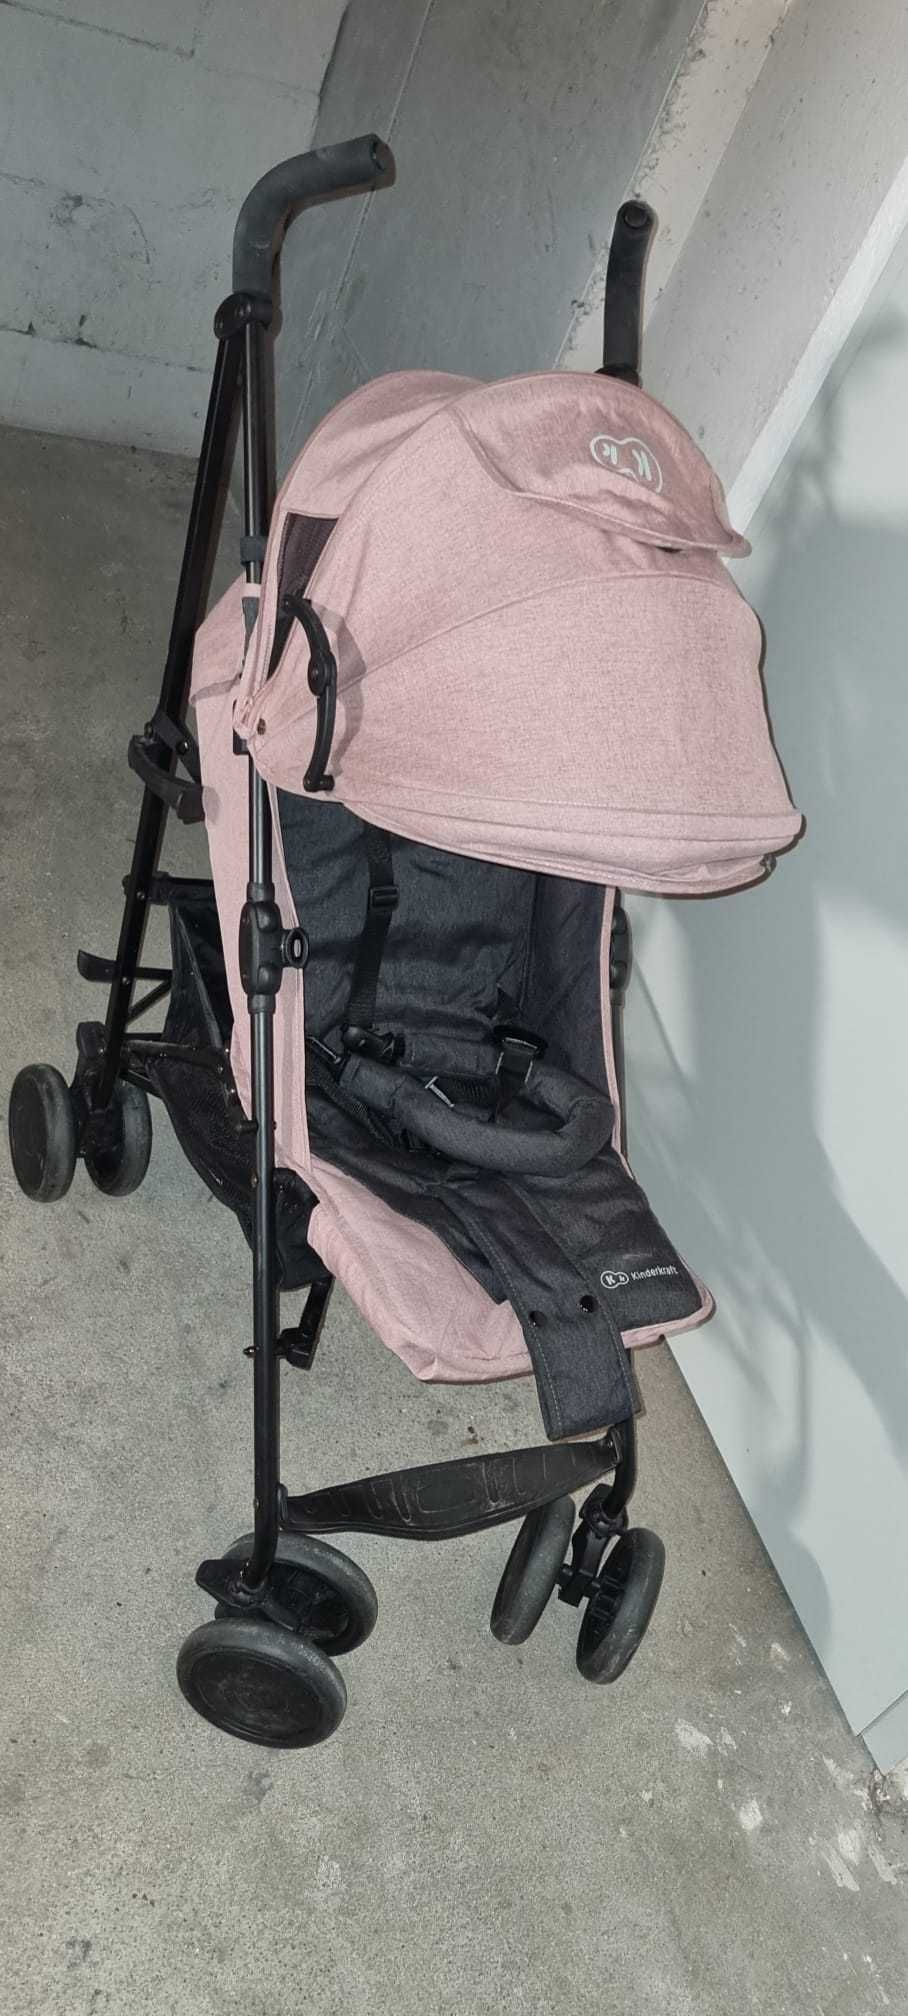 Wózek spacerówka Kinderkraft Siesta różowy